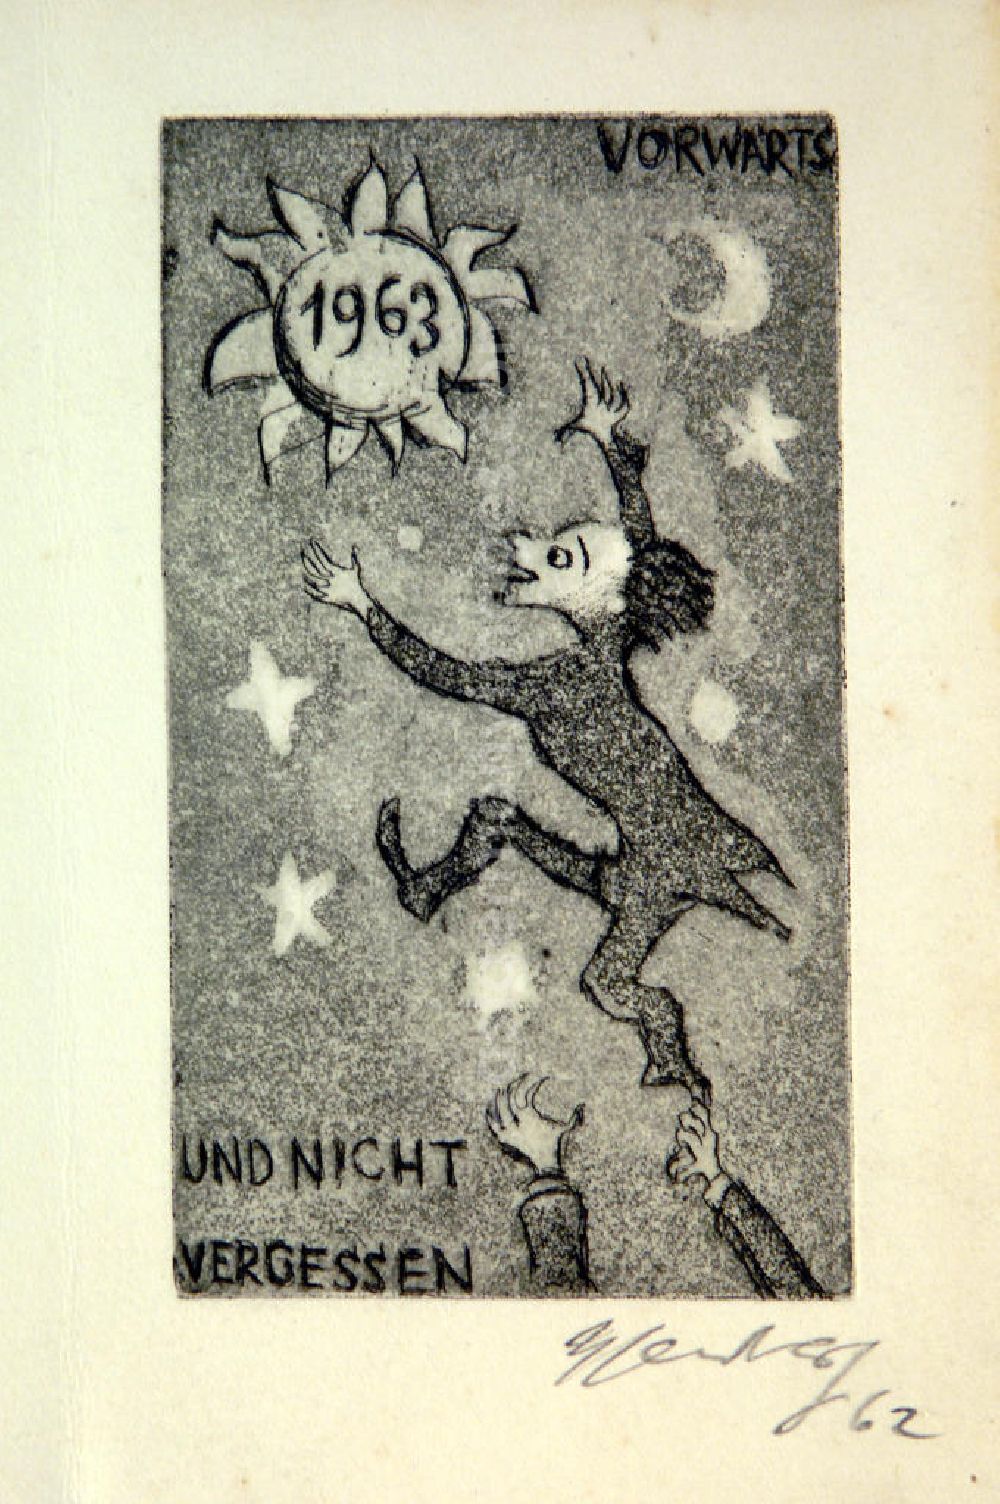 GDR photo archive: Berlin - Grafik von Herbert Sandberg Vorwärts und nicht vergessen (Neujahrsgraphik) aus dem Jahr 1962, 6,9x12,